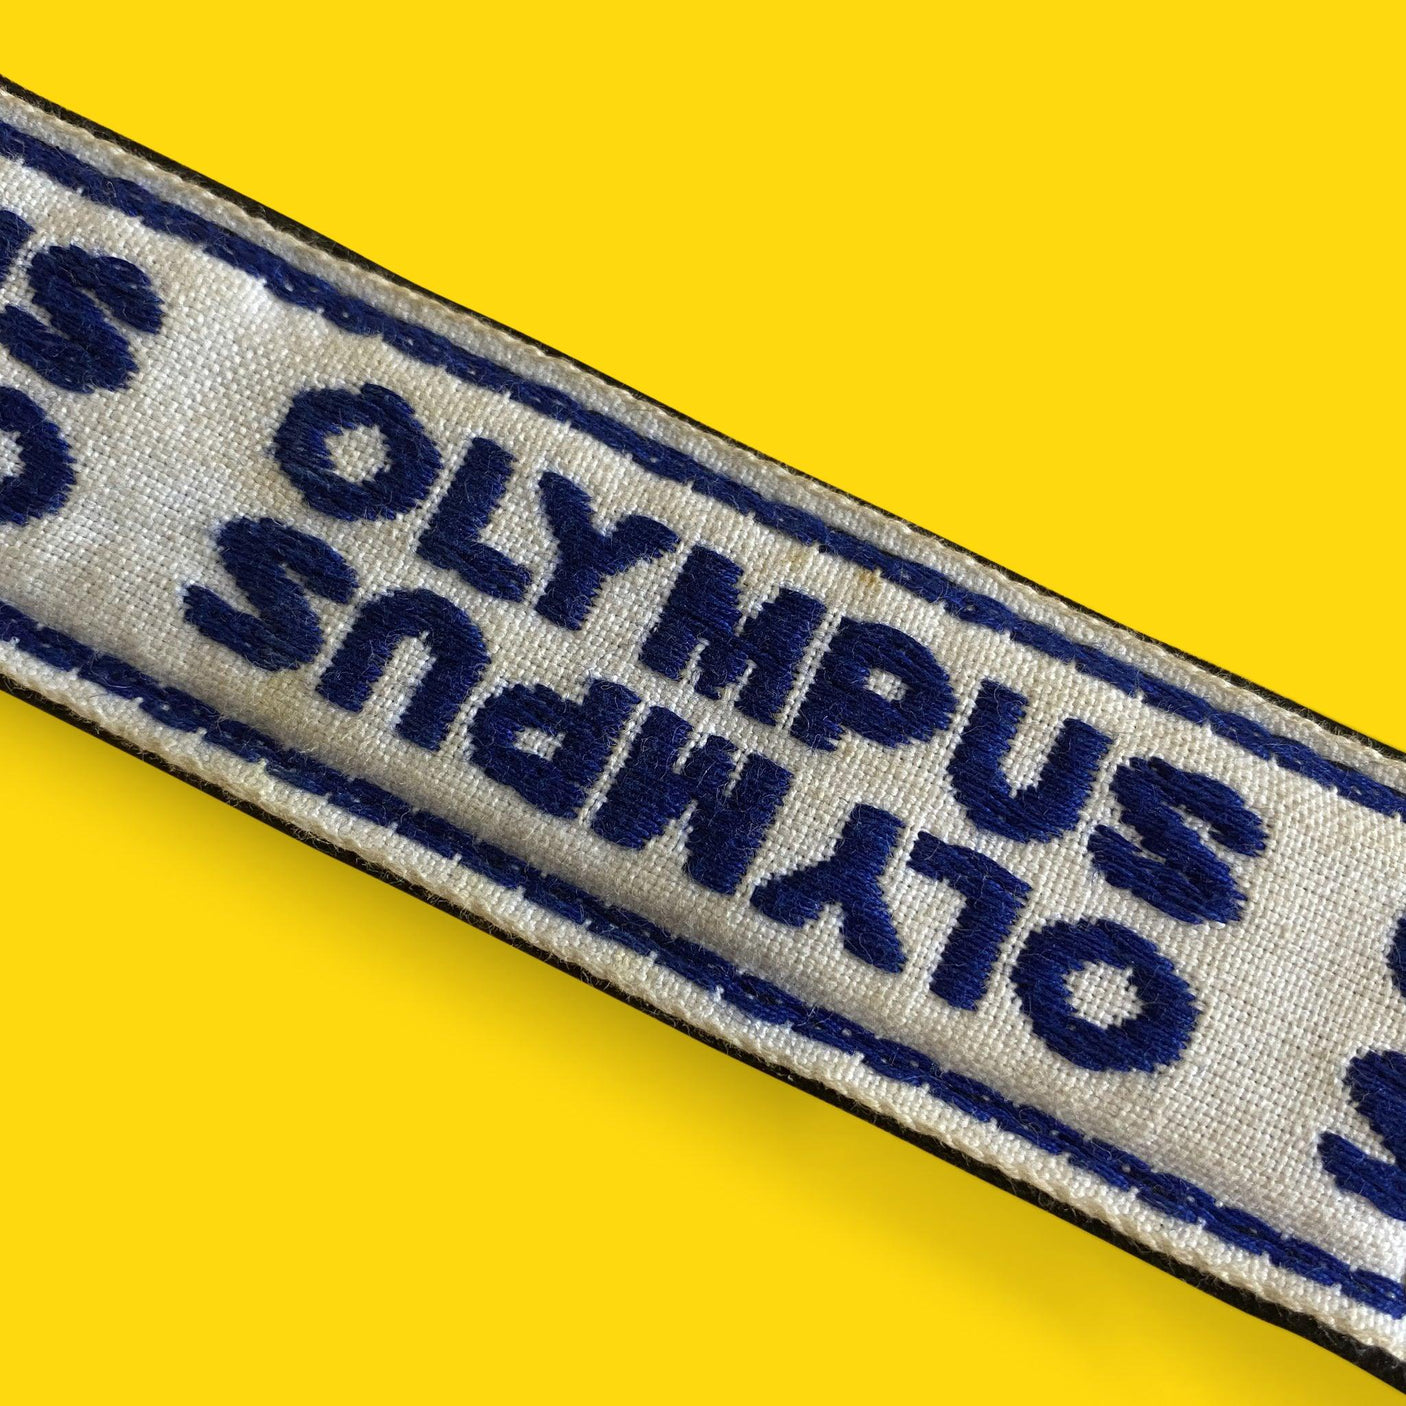 Olympus Blue & White SLR Camera Strap